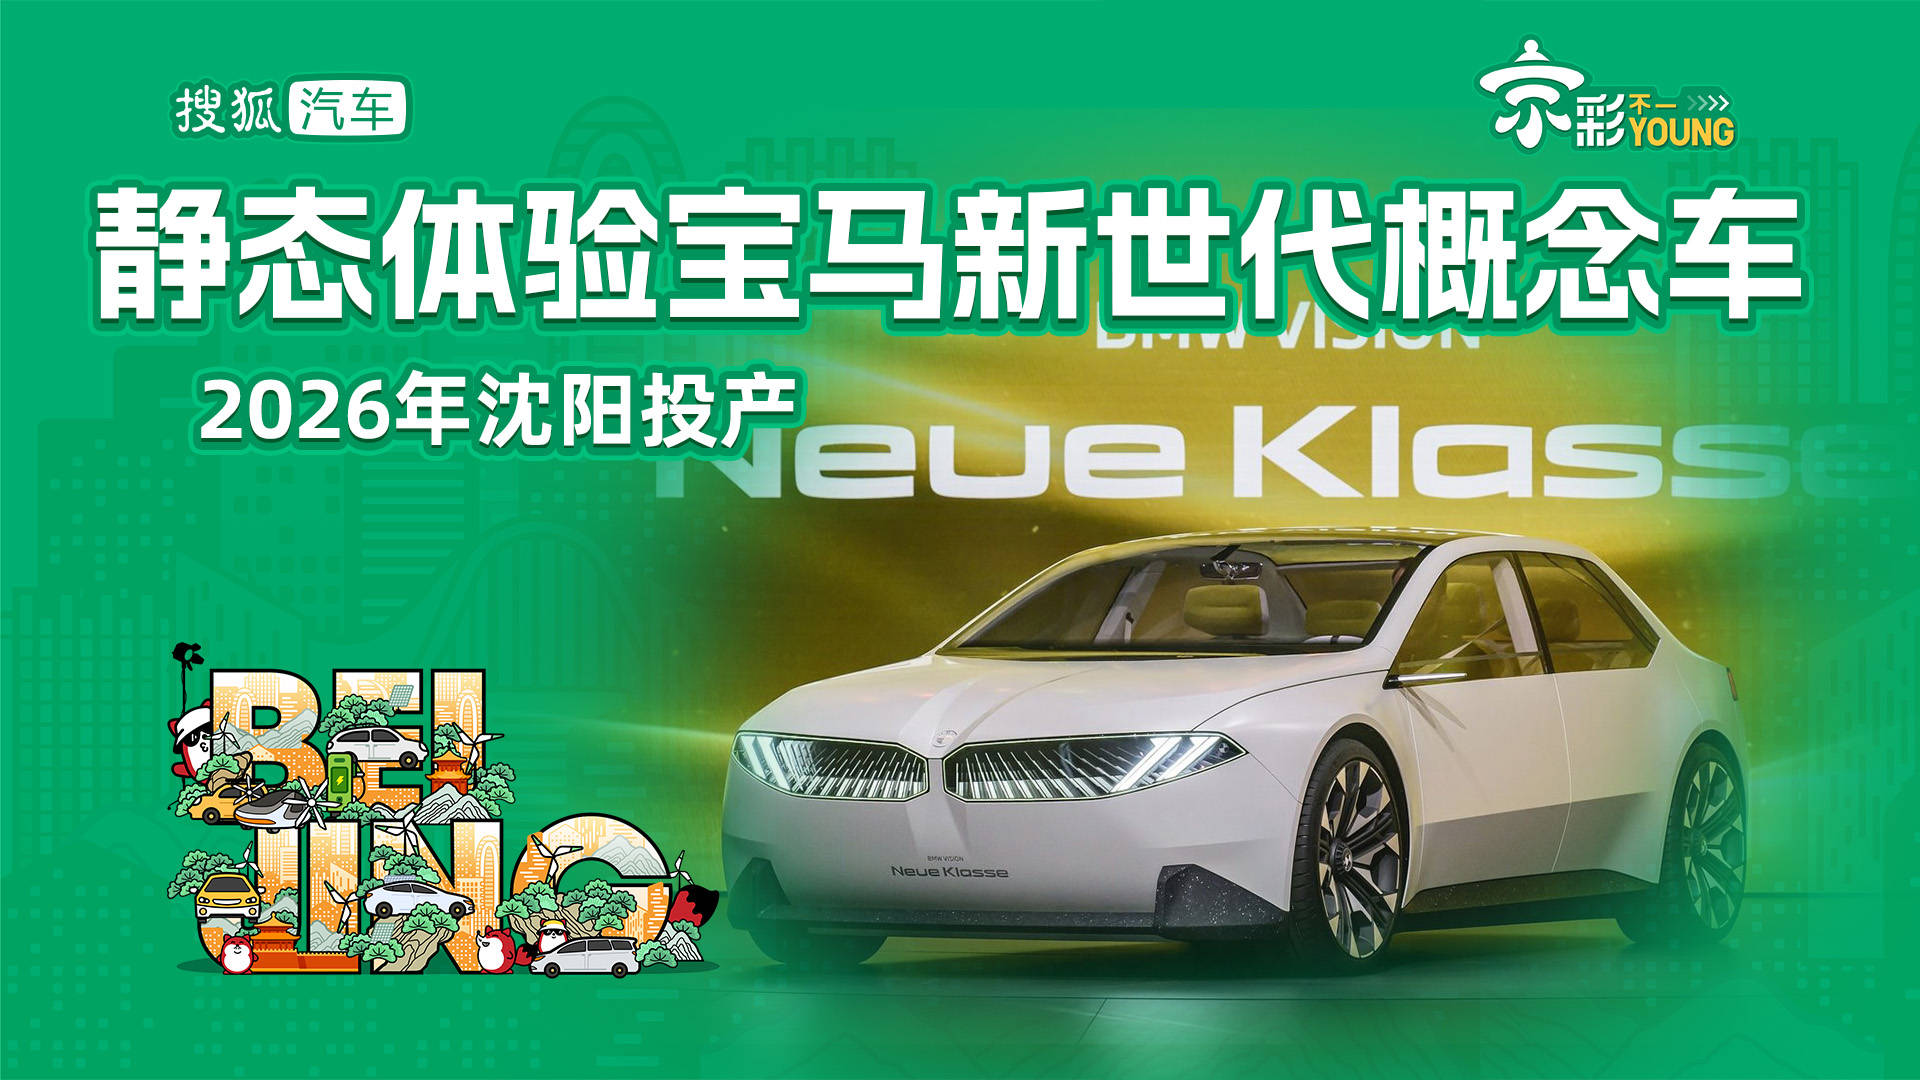 2026年，沈阳投产体验静态宝马新一代概念车_搜狐汽车_ Sohu.com。